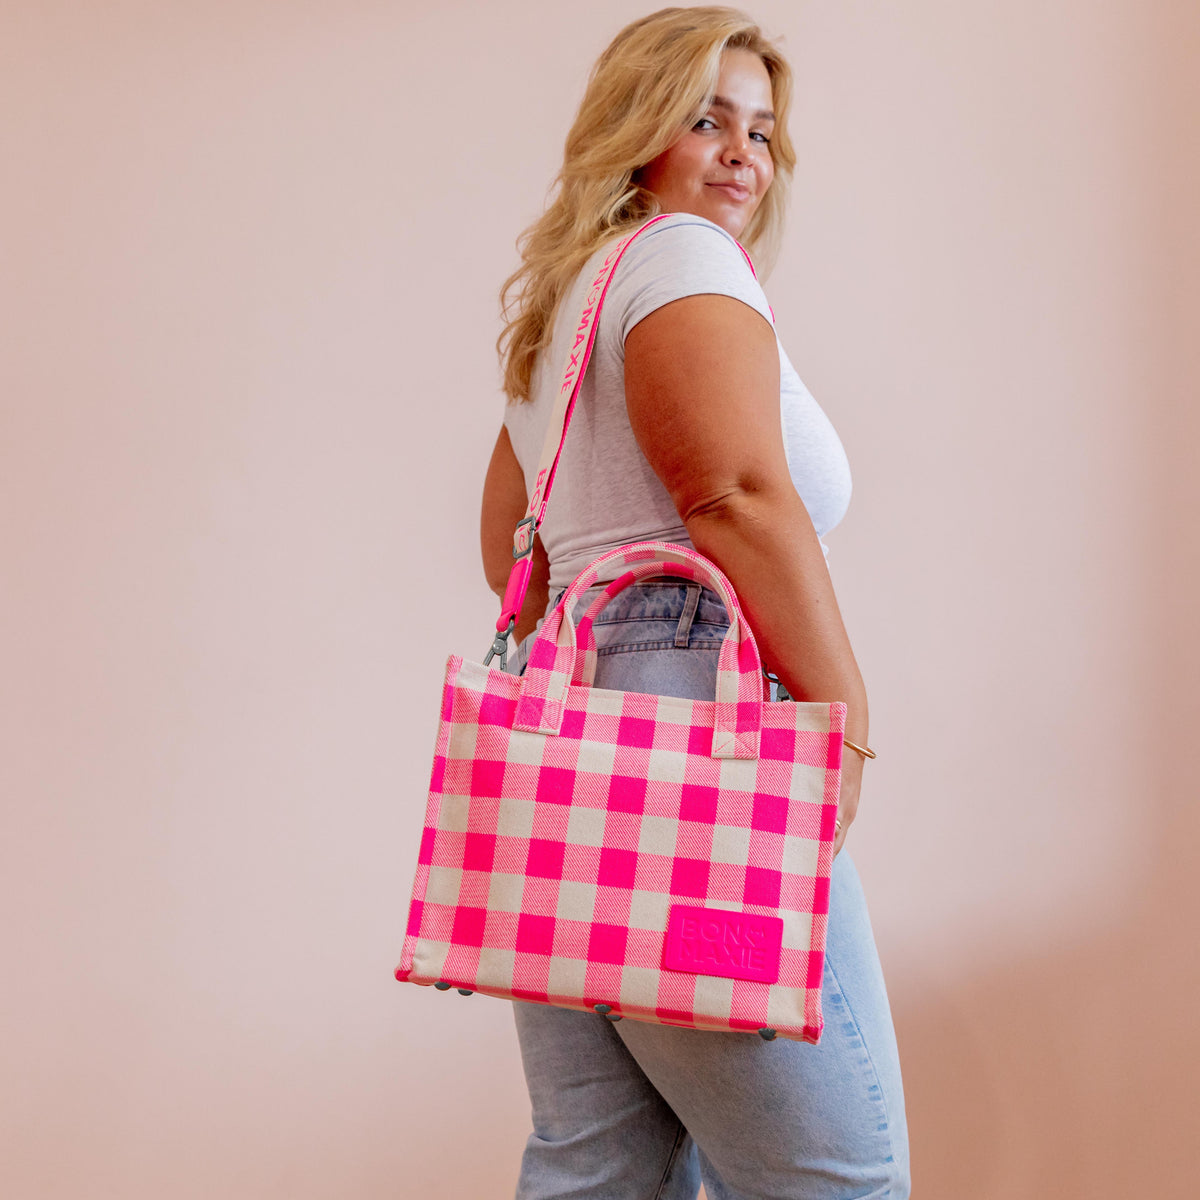 Mini Bon Vivant Tote Bag - Neon Pink GinghamMini Bon Vivant Tote Bag - Neon Pink Gingham